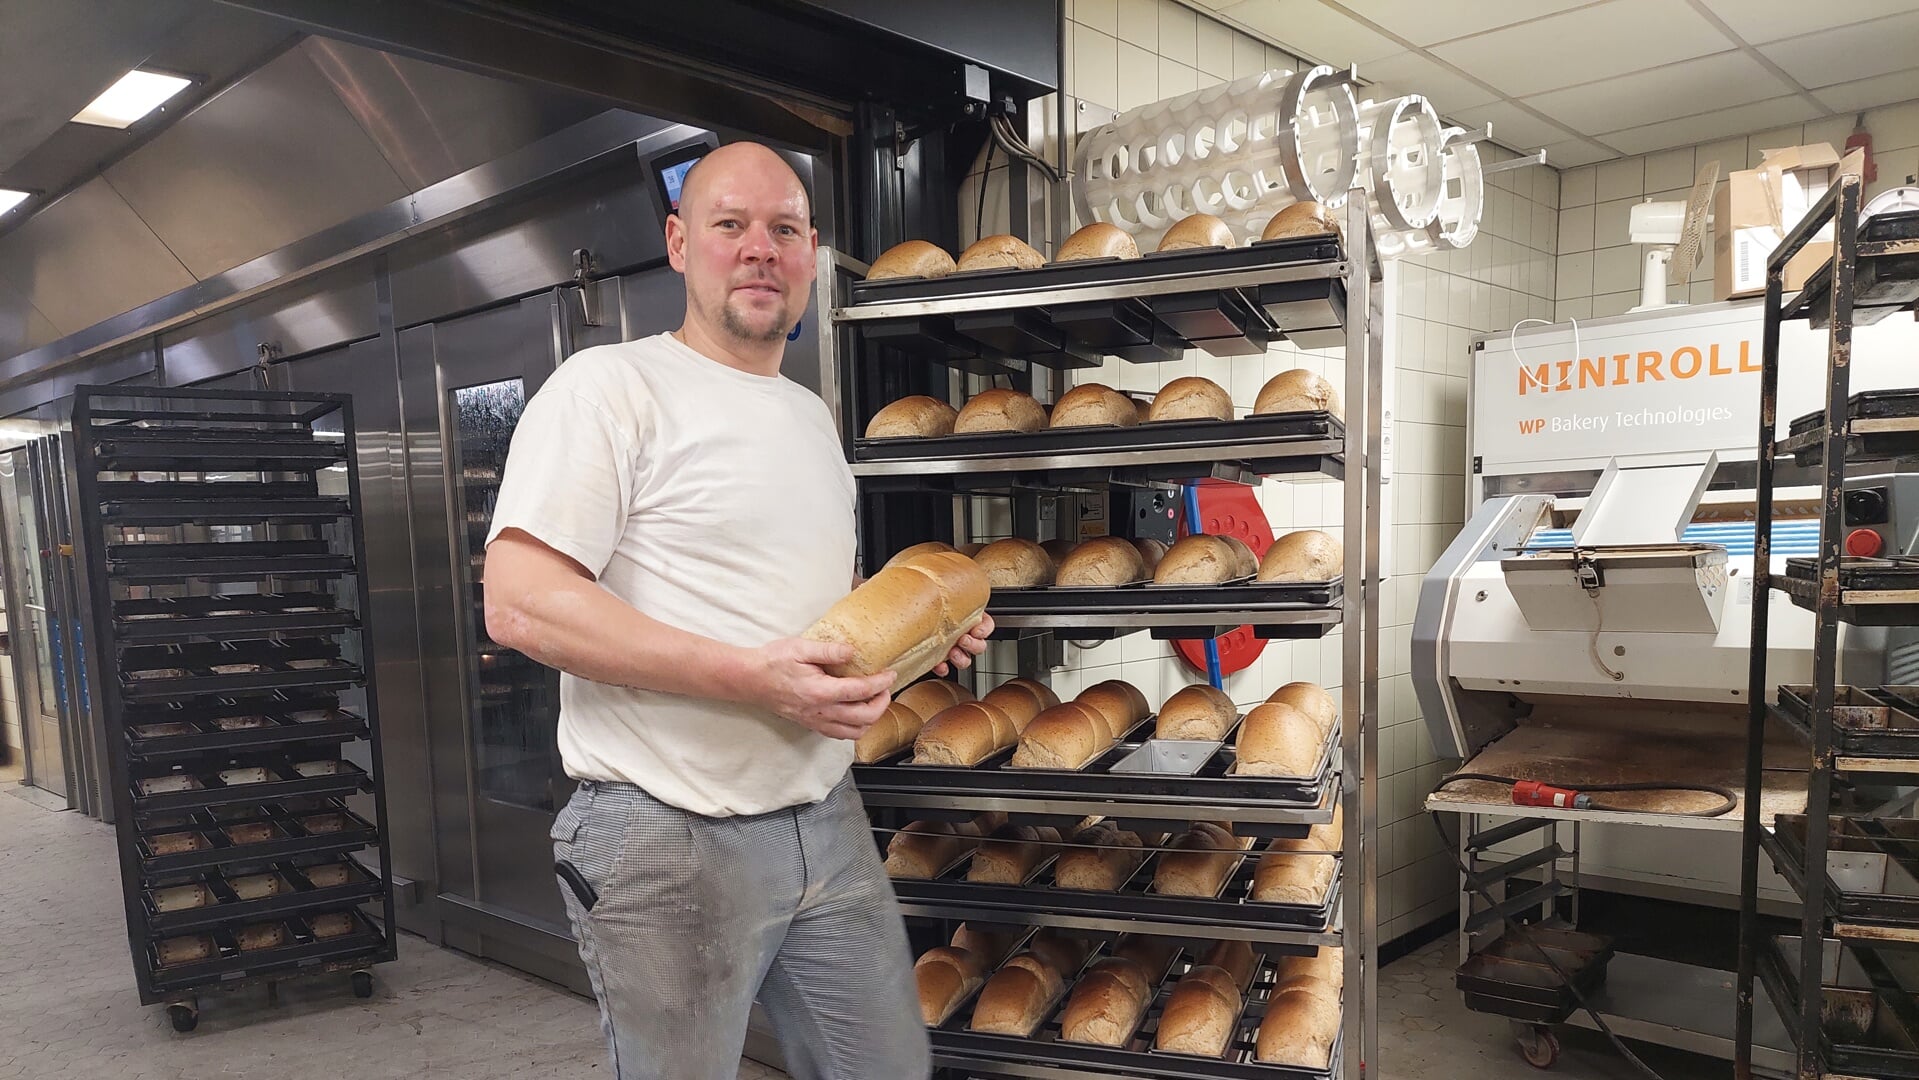 Rene haalt veel voldoening uit zijn werk als broodbakker.